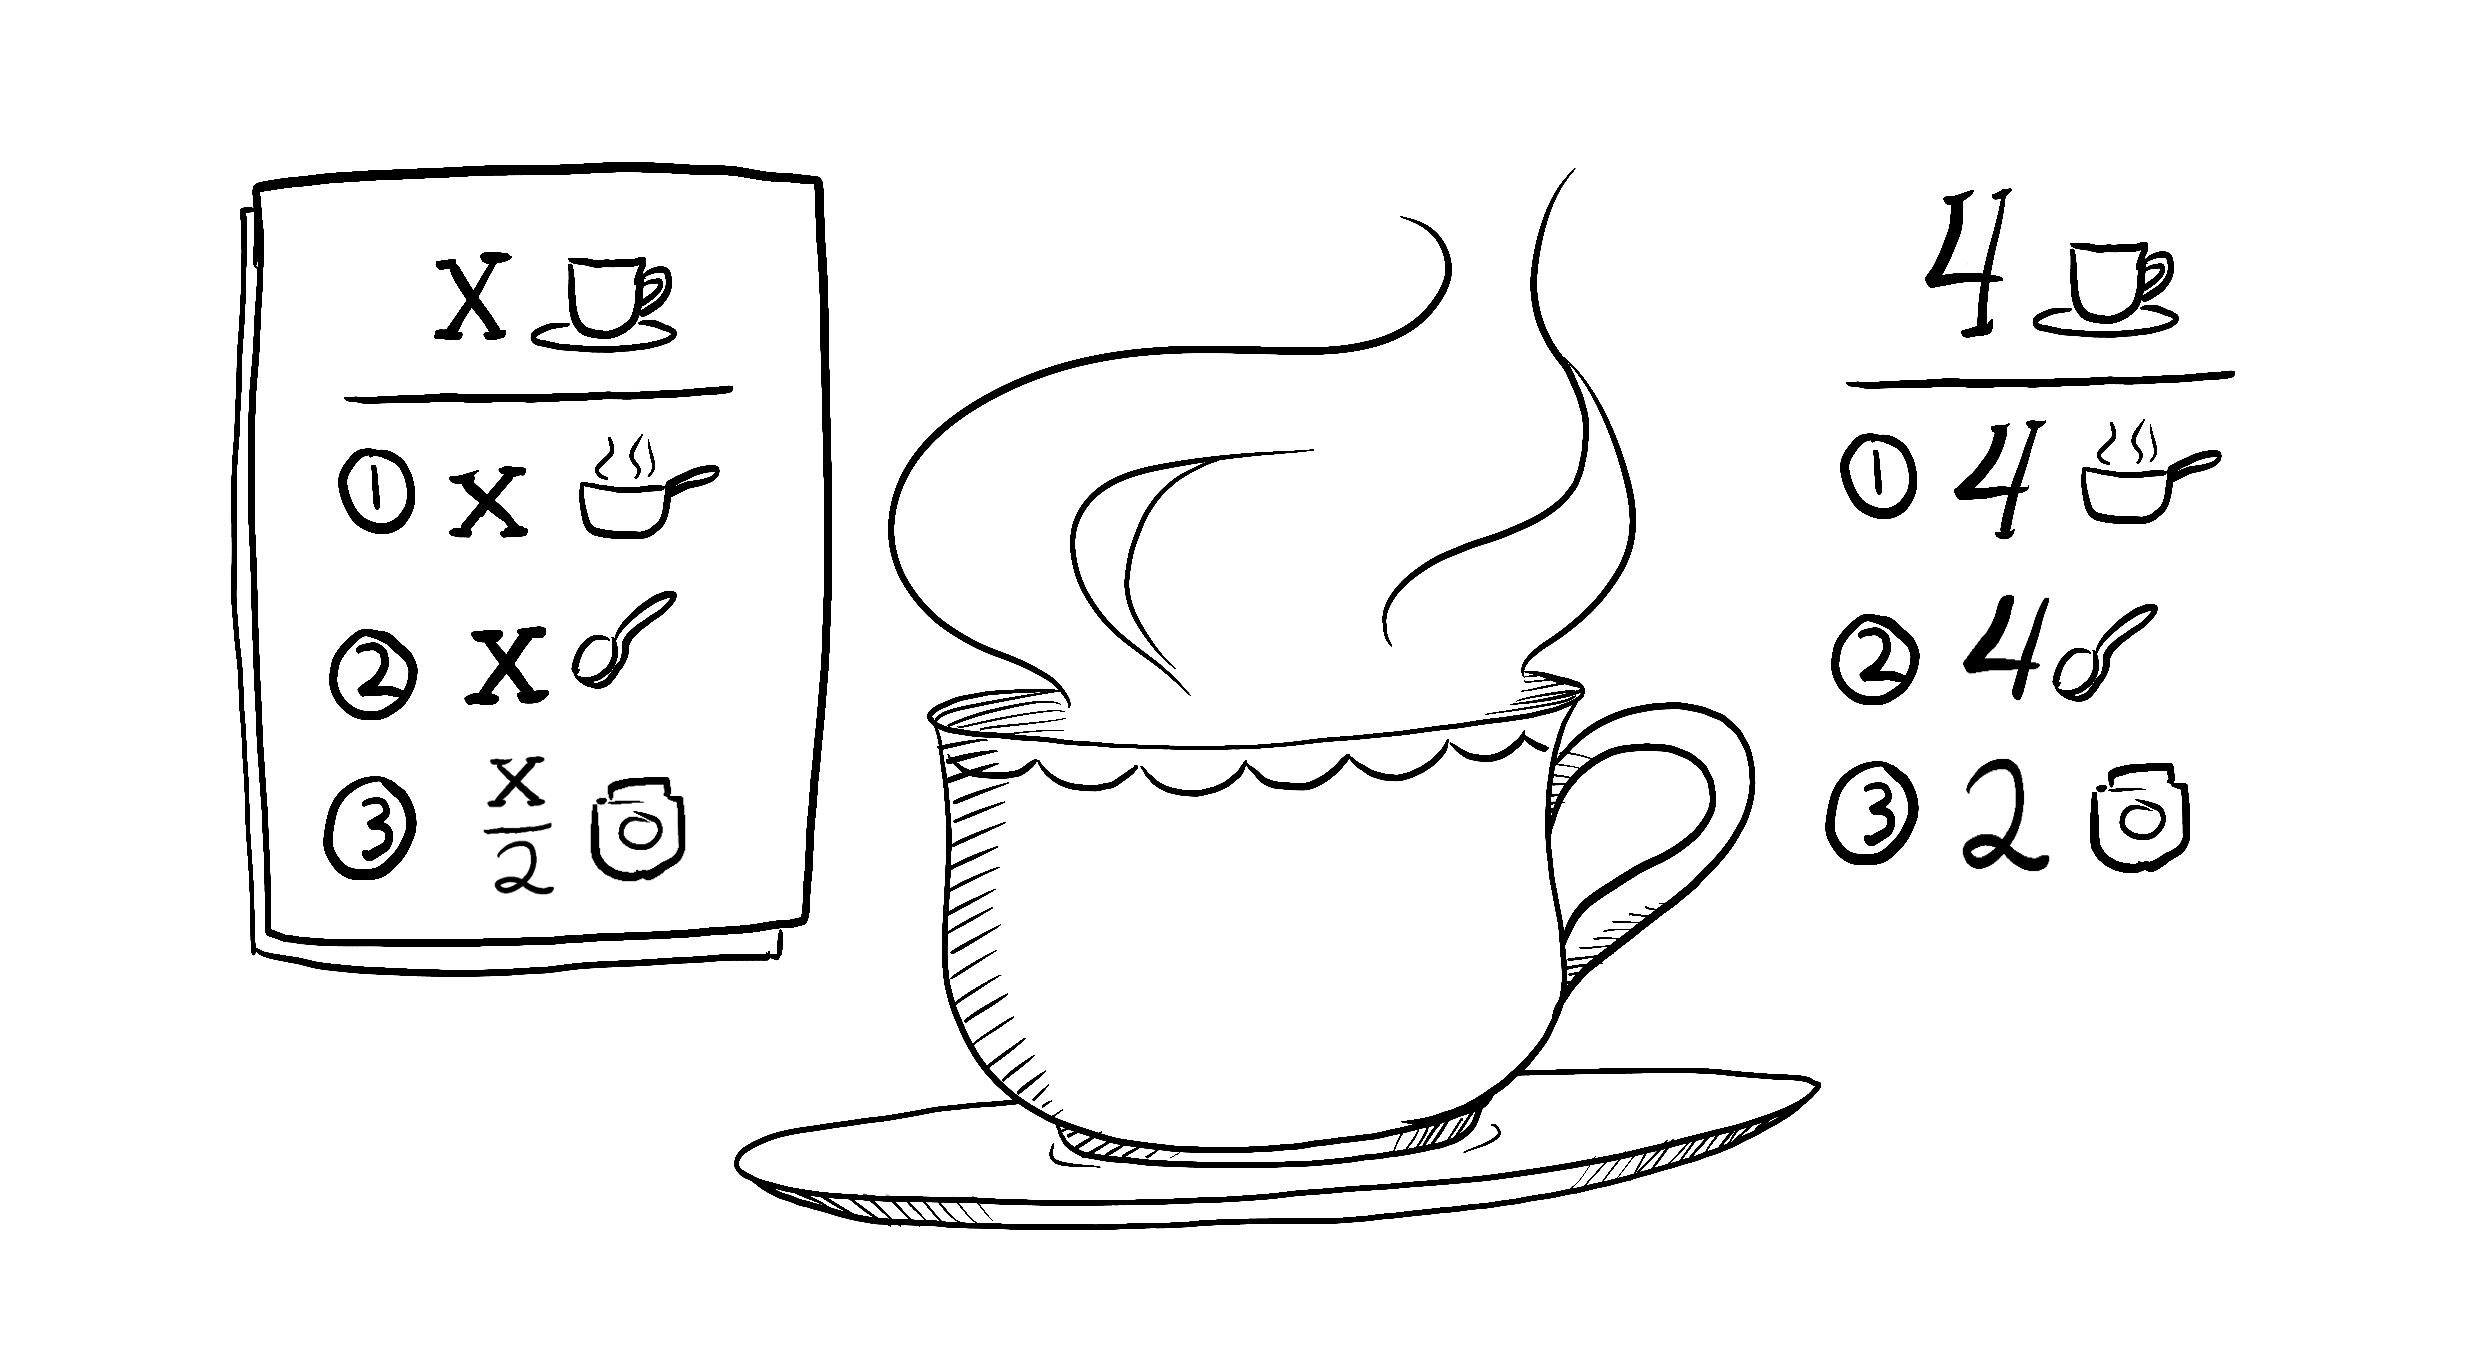 Рецепт чая для x человек: возьмите x чашек воды, добавьте x ложек чая и 0.5x ложек специй, и 0.5x чашек молока